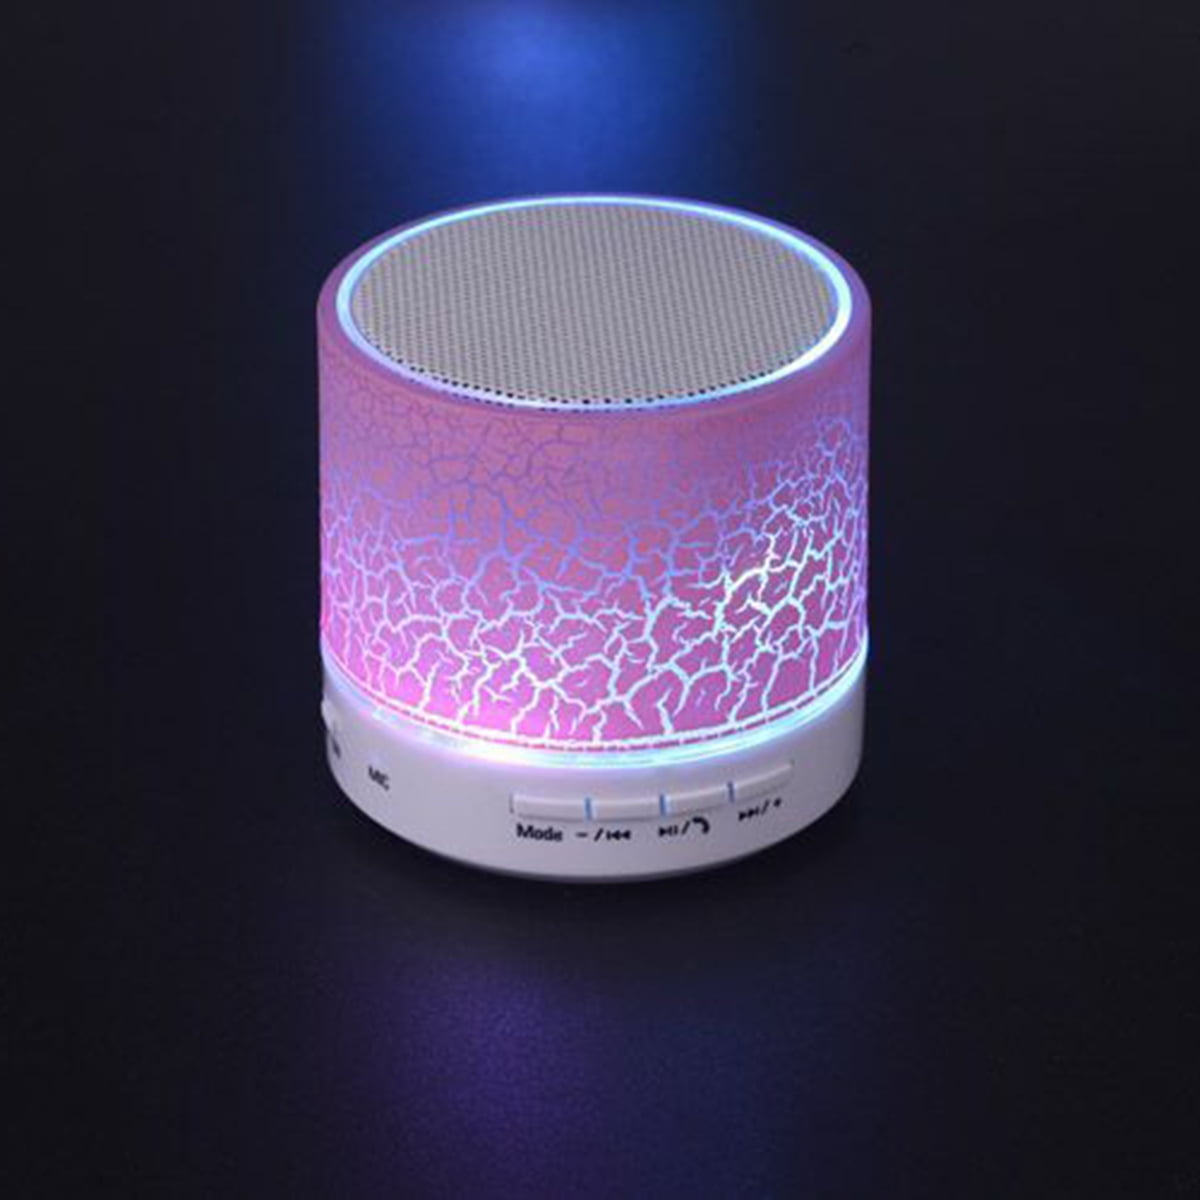 Mini LED Bluetooth Speaker